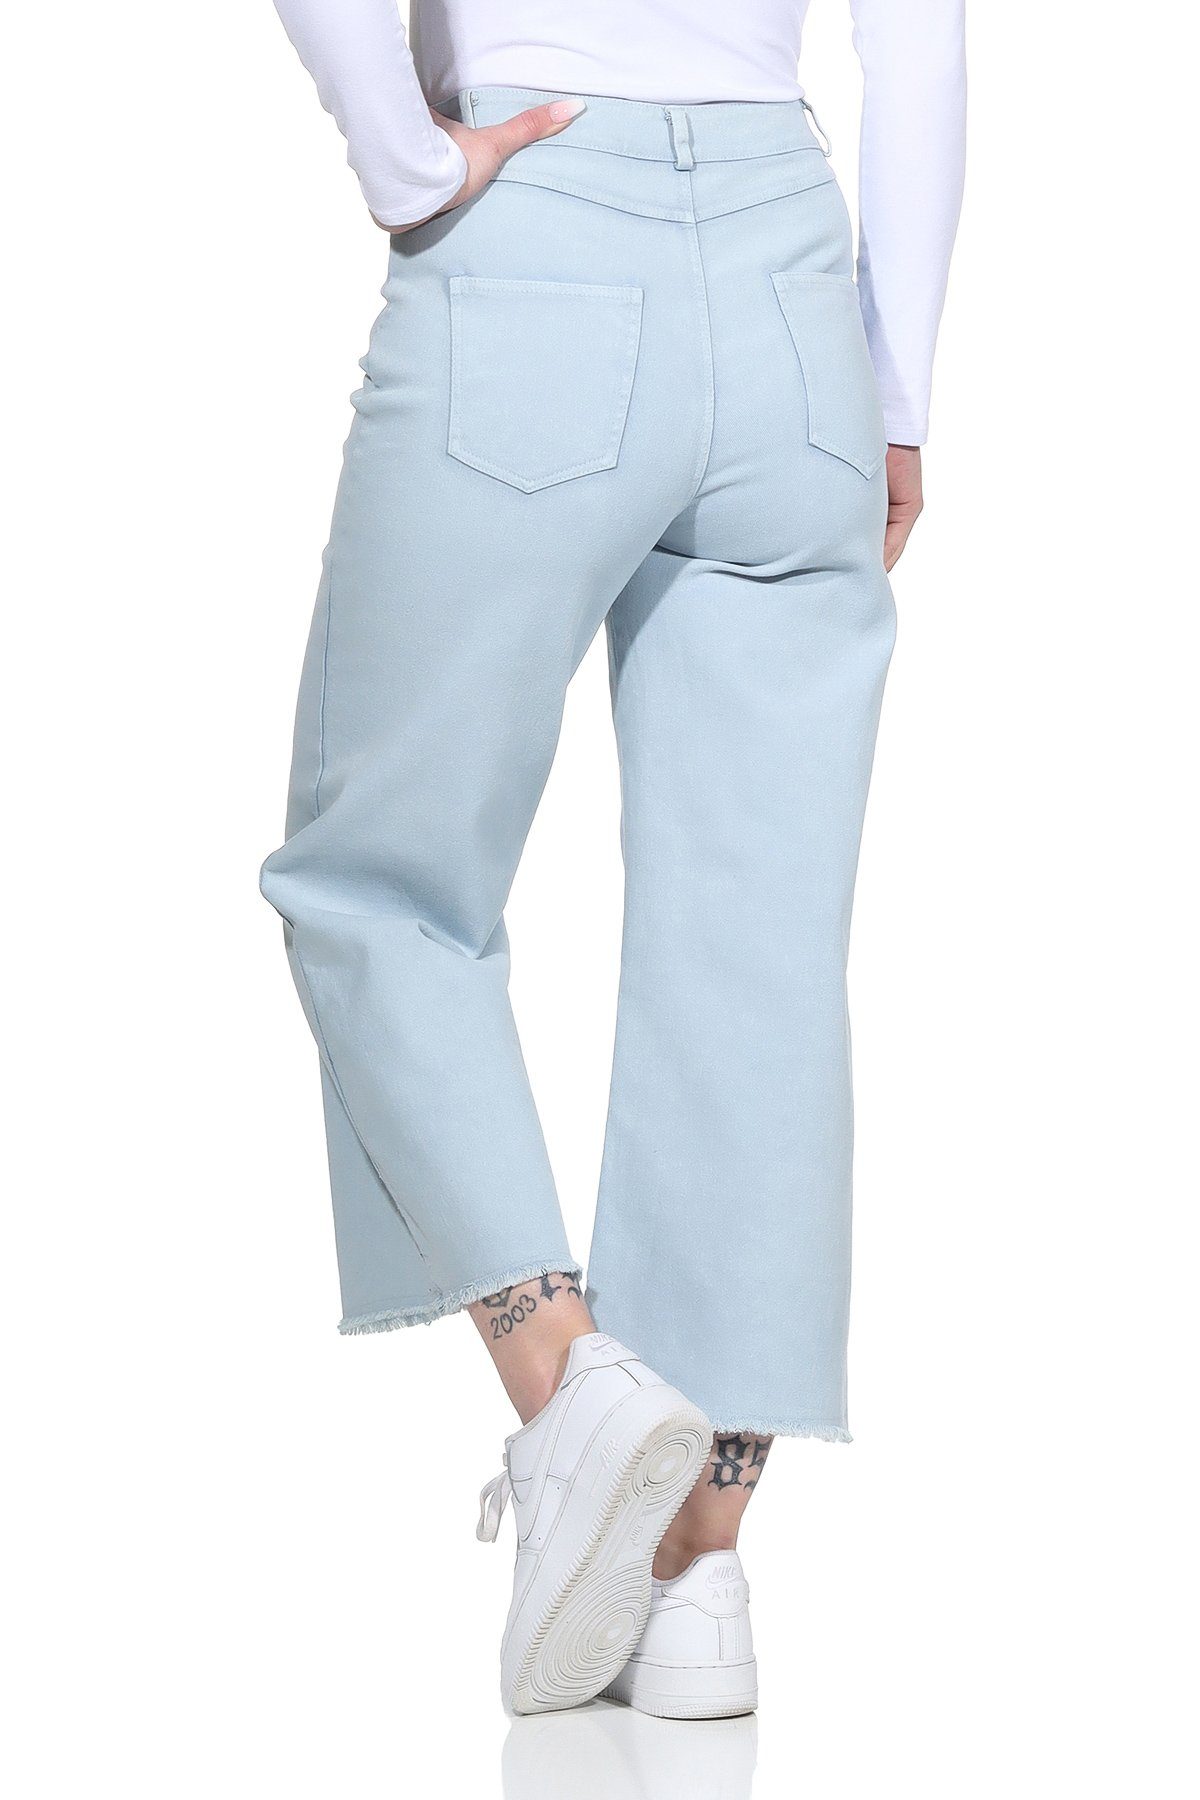 Damenmode Damen Wide Jeans Gürtelschlaufen, Culotte knöchelfrei, für Weite Aurela Hellblau Baumwolle Jeans 100% mit Leg